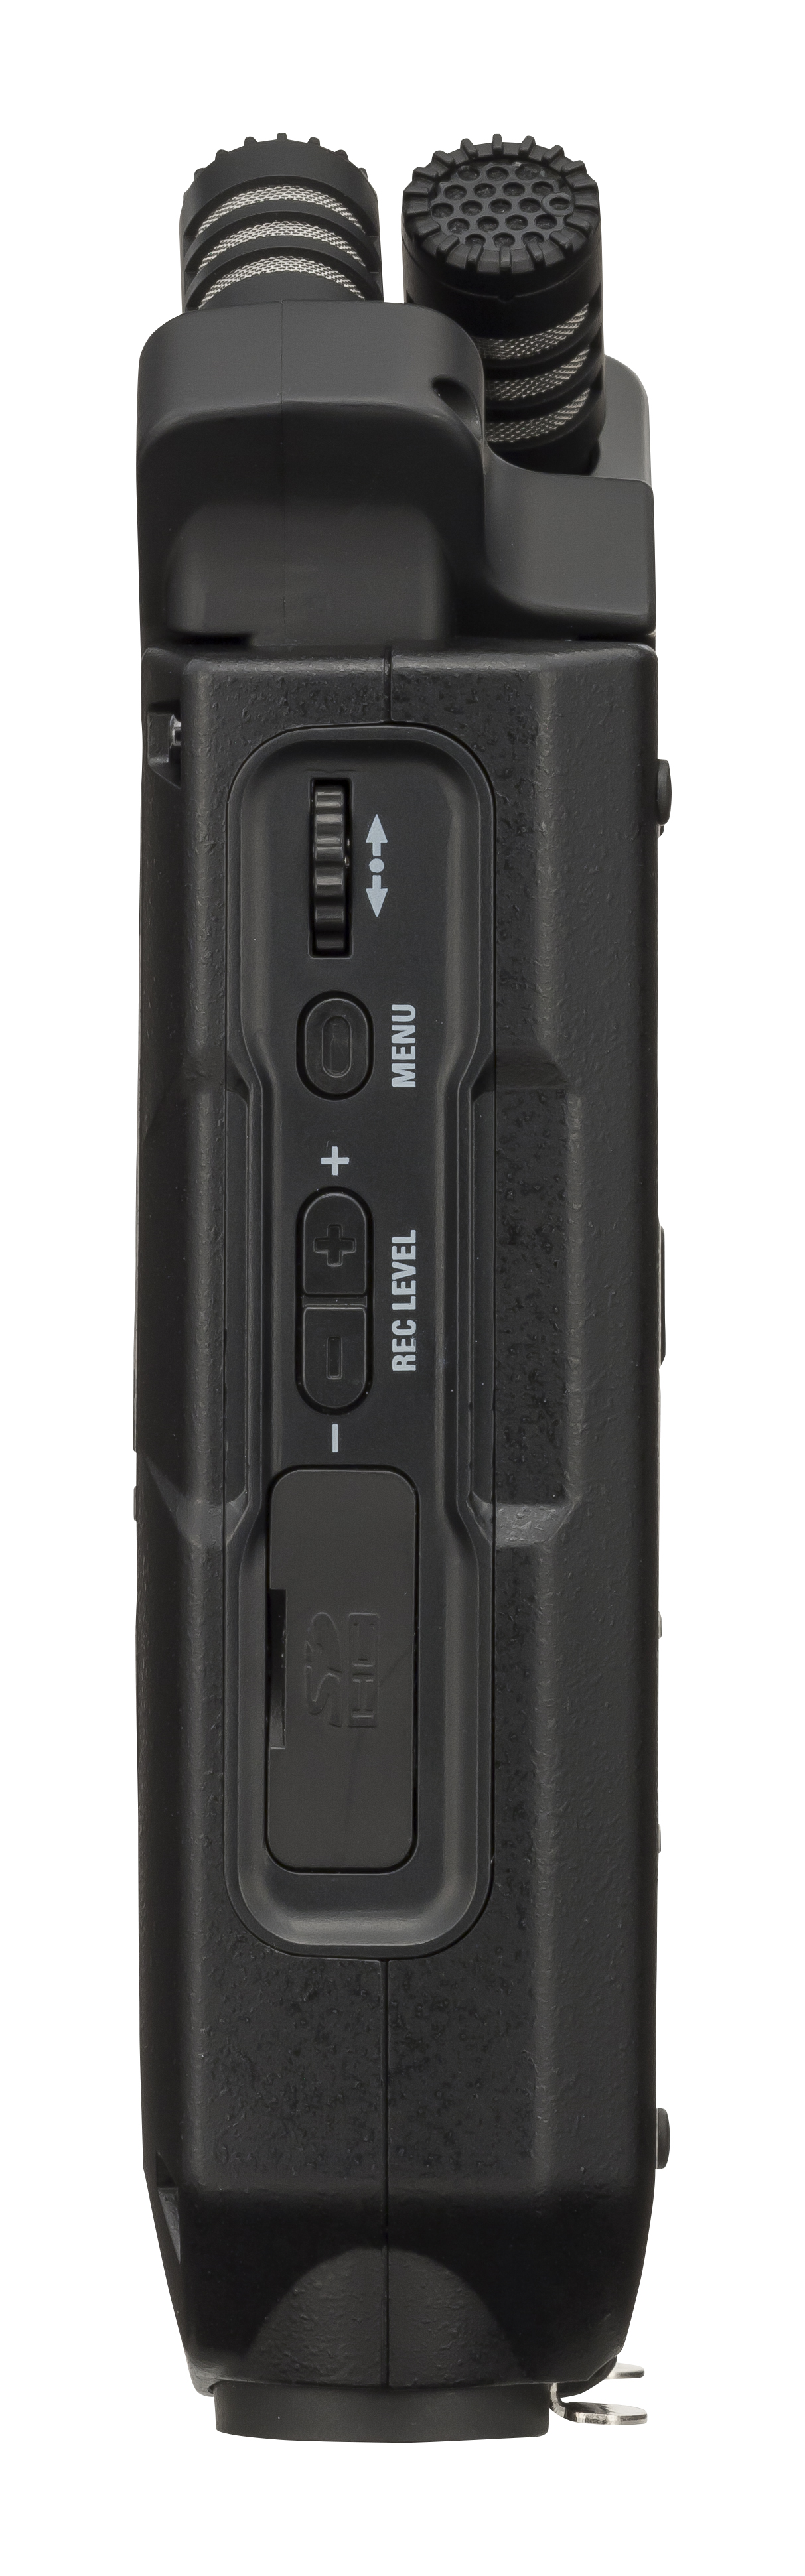 Zoom H4n Pro Black - Enregistreur Portable - Variation 2